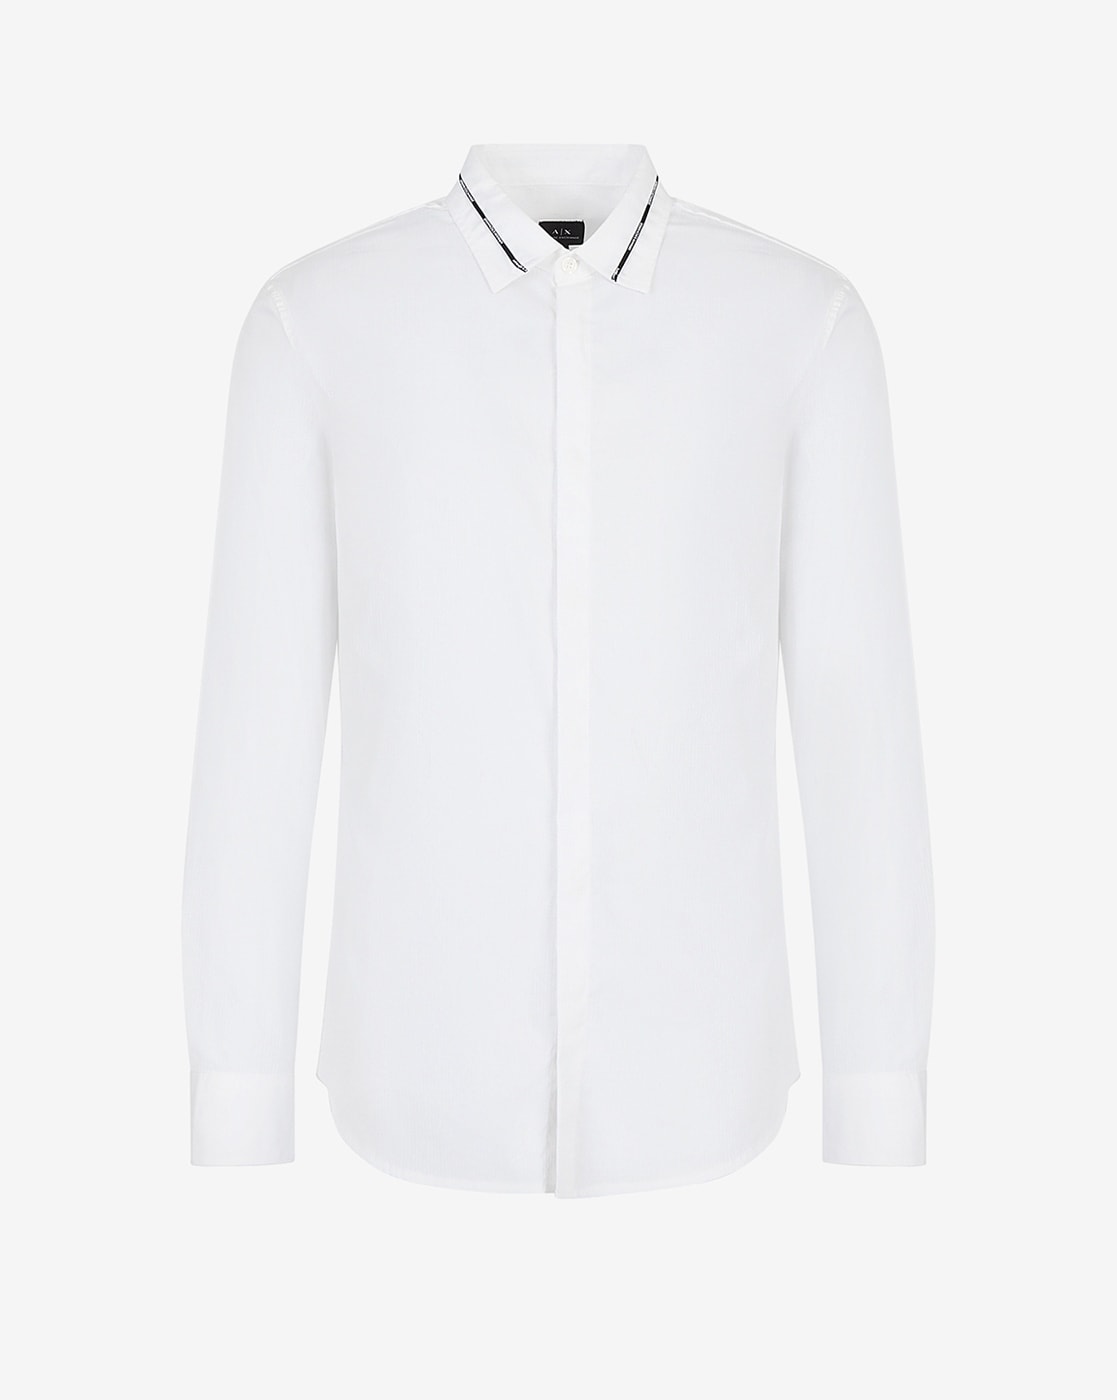 Men's Shirt - White - XXL